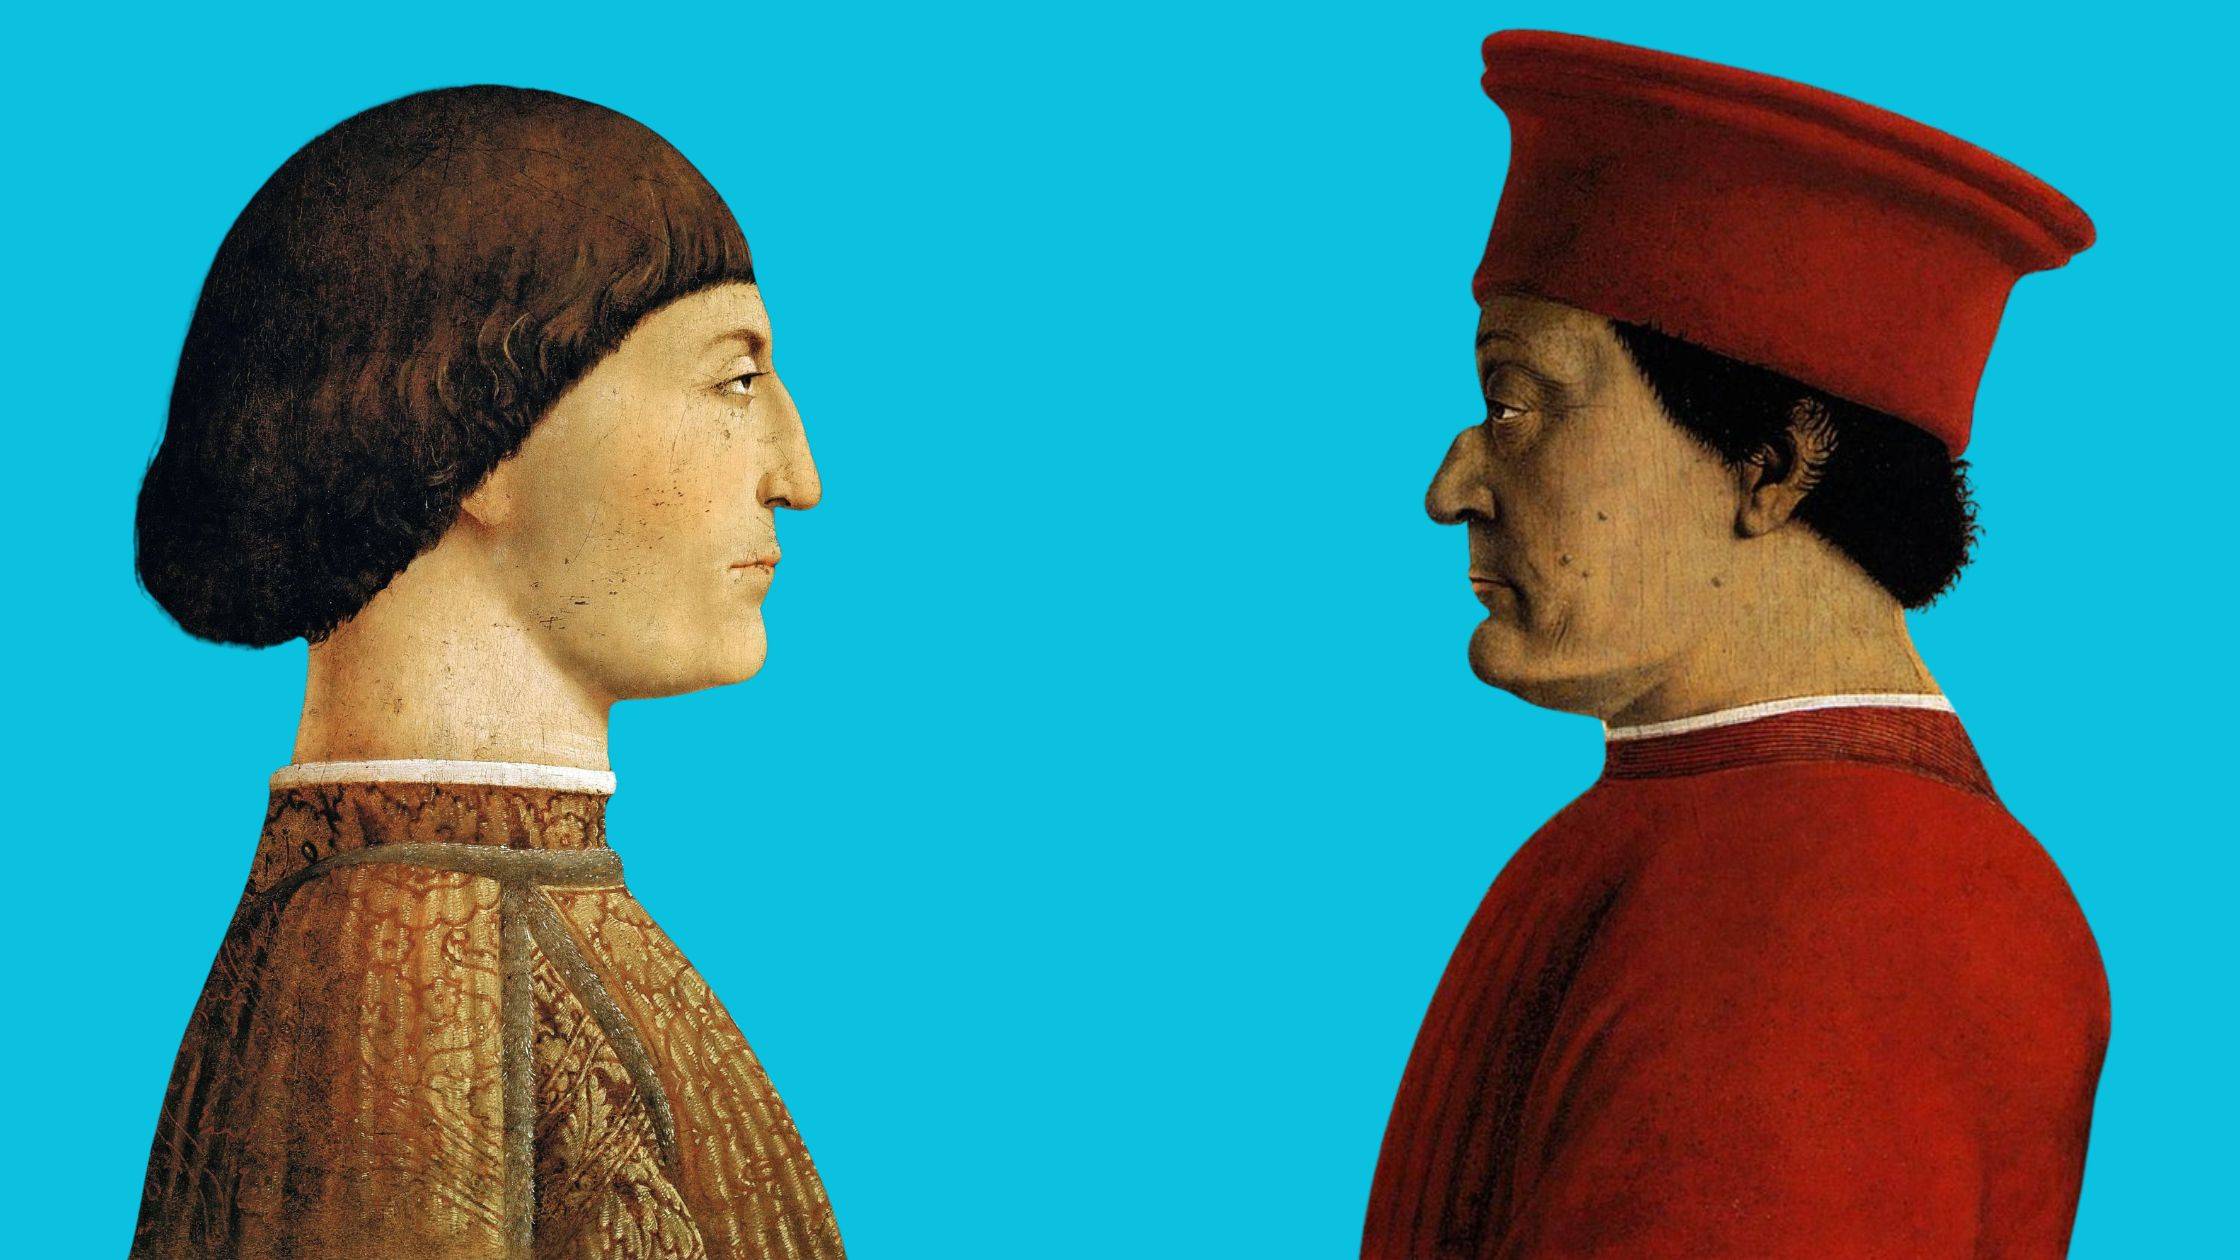 Portraits of Pandolfo Malatesta and Federico da Montefeltro by Piero della Francesca